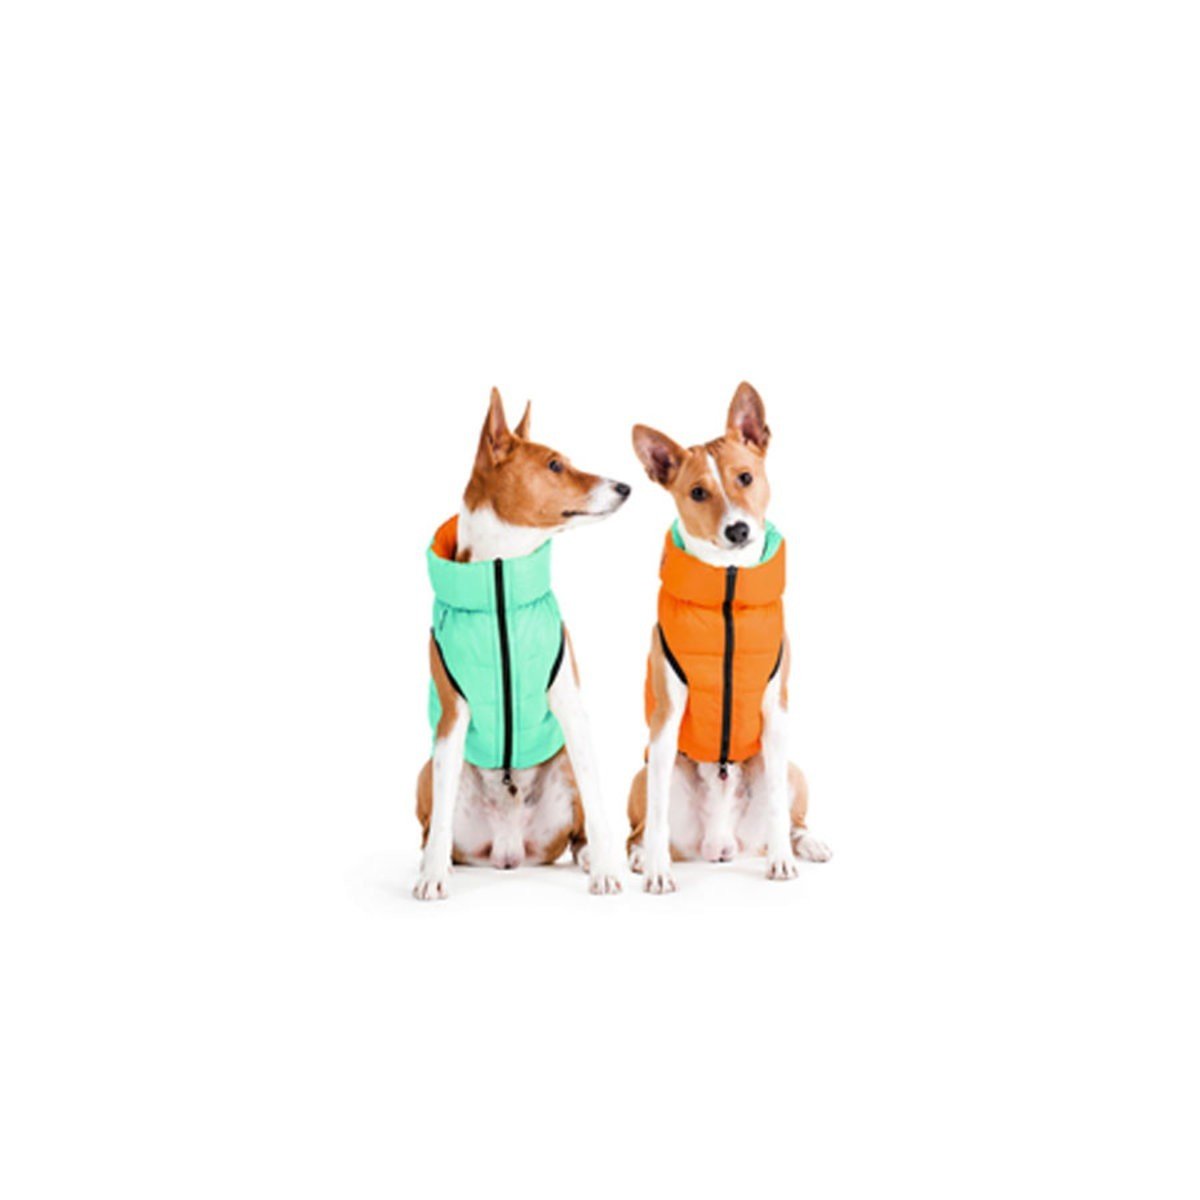 Курточка для собак AiryVest Lumi двухсторонняя, светящаяся в темноте, XS25, салатово-оранжевая - фото 2